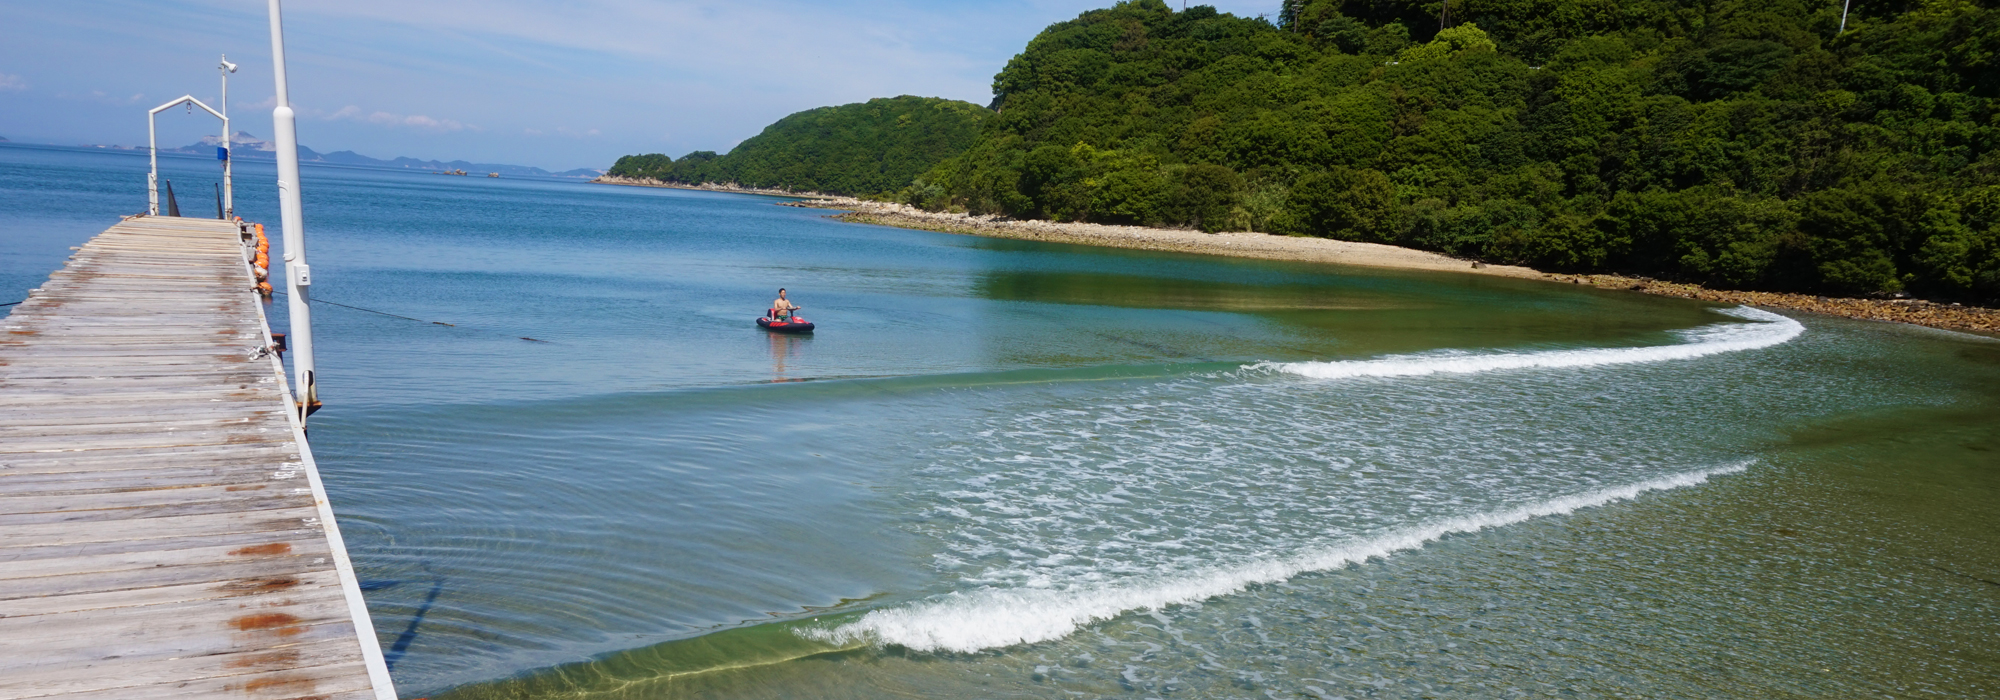 緑に囲まれた小豆島の海で優雅なひとときを